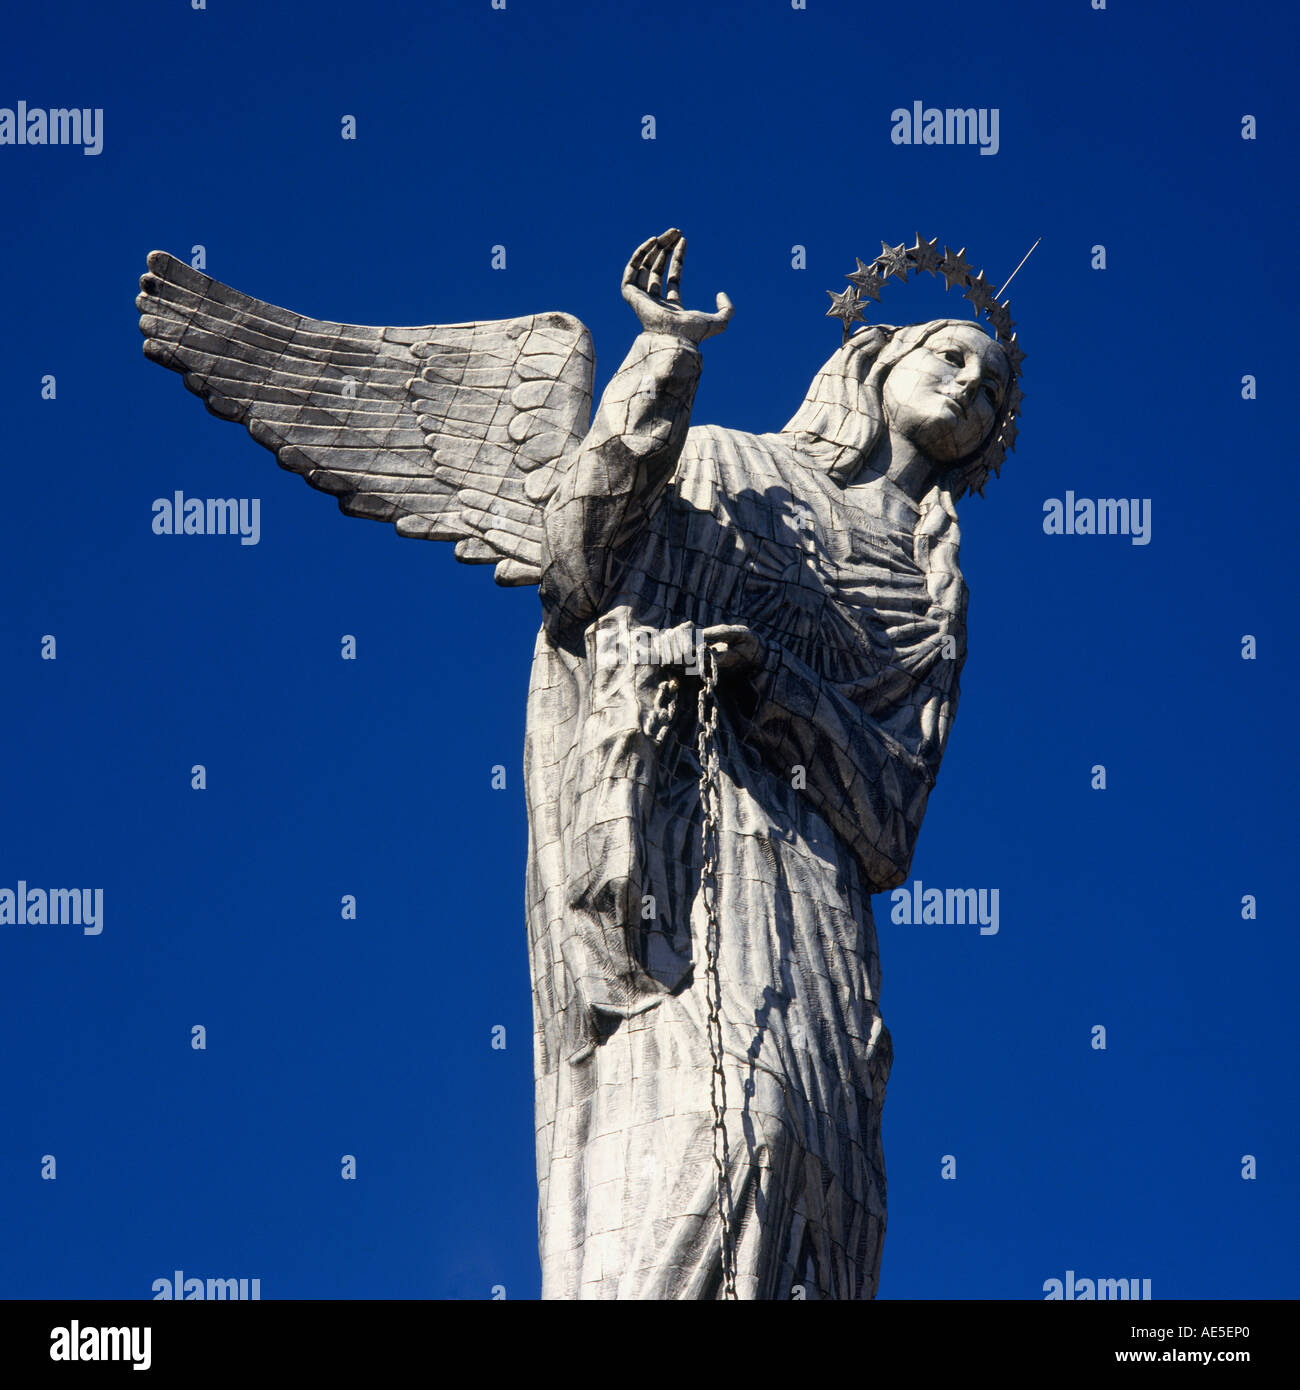 Osservando il metallo lucido statua di La Virgen de Quito contro un cielo blu senza nuvole a El Panecillo Quito Pichincha Ecuador Foto Stock